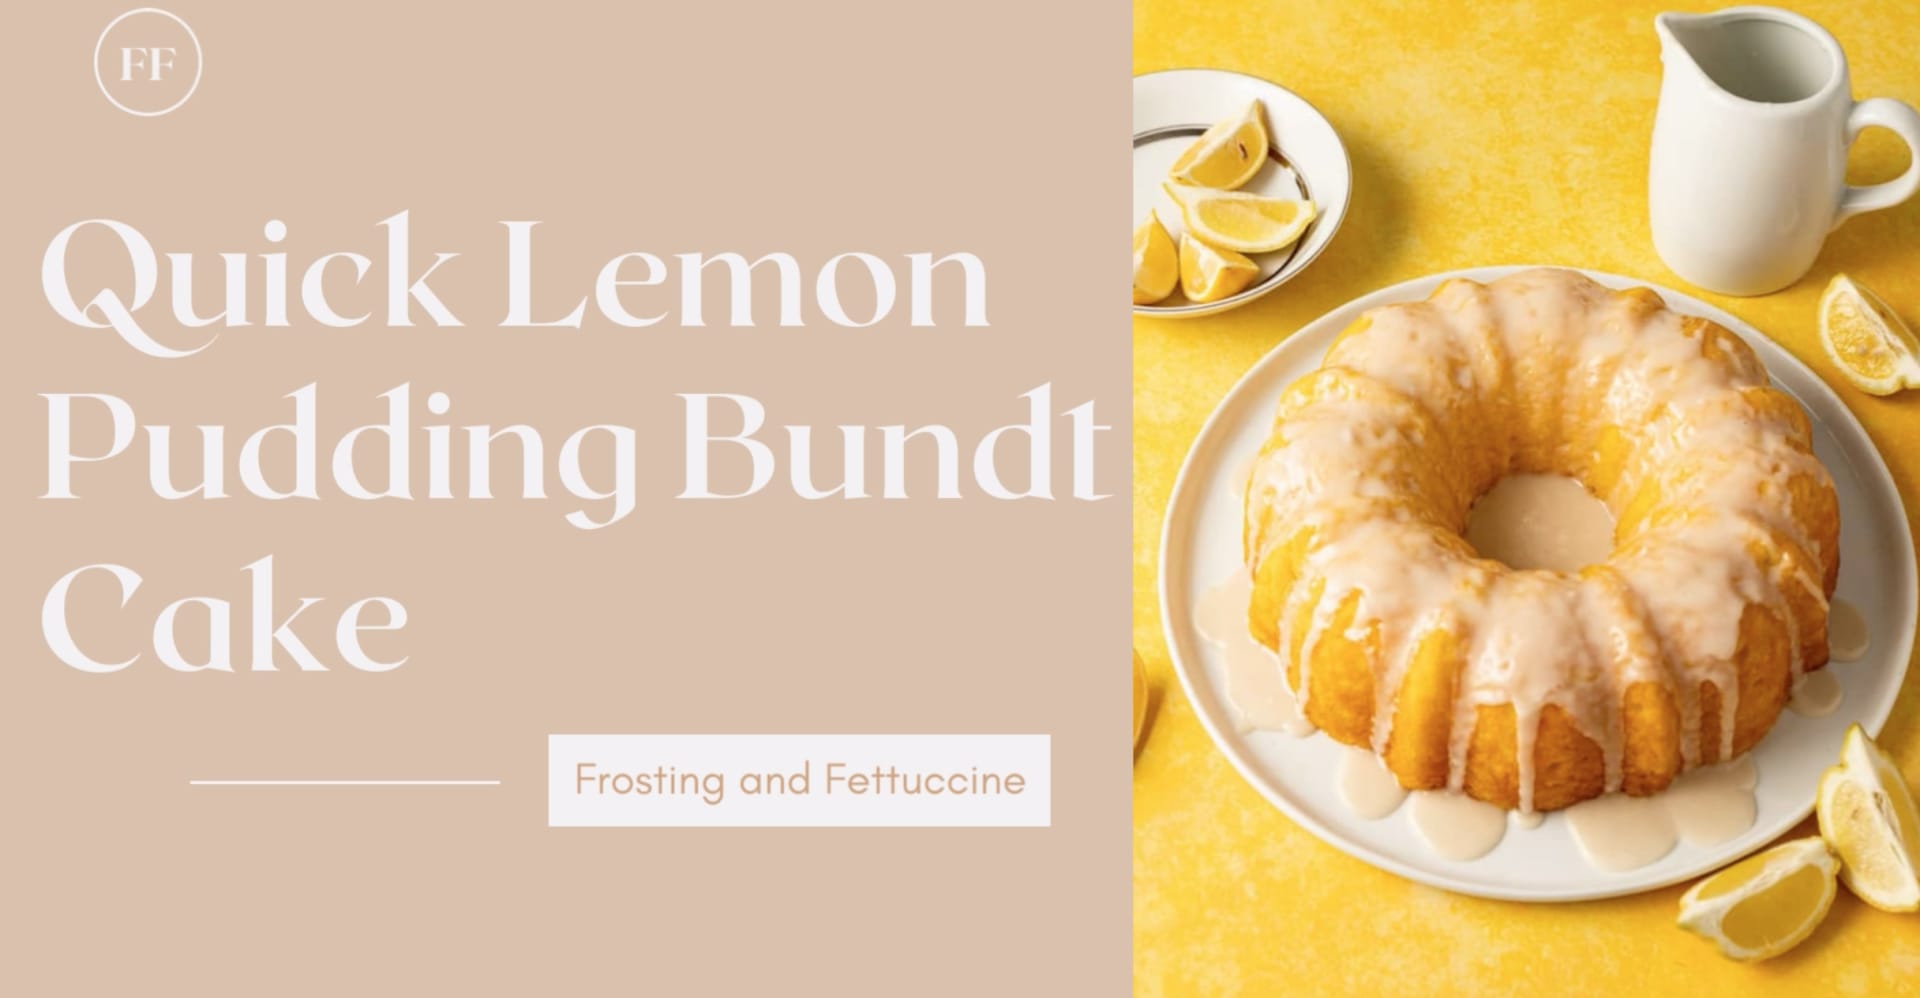 Lemon Pound Cake - Once Upon a Chef